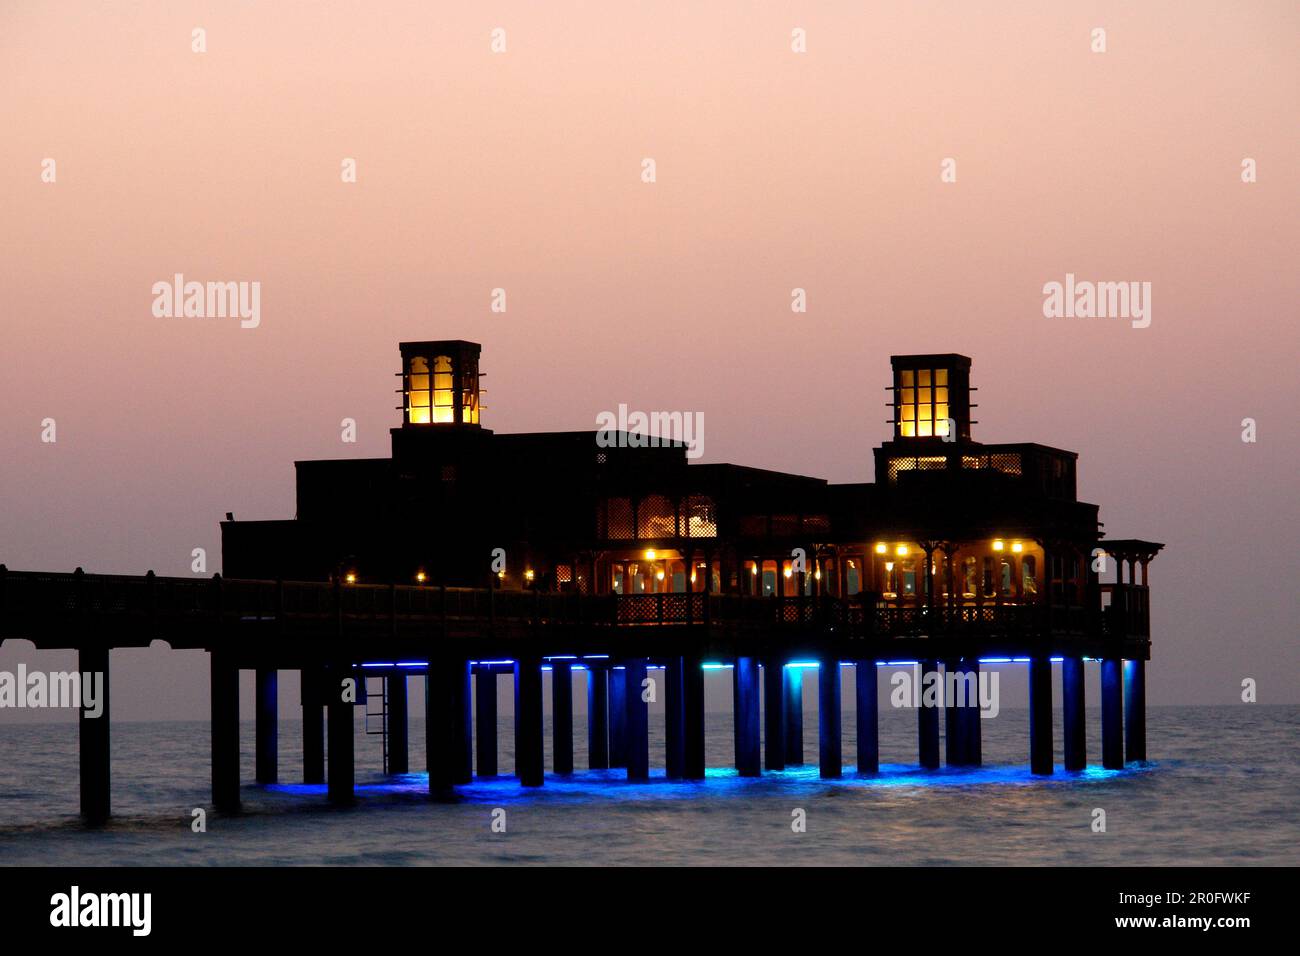 Al Qasr Hotel Pier Restaurant, Dubai, United Arab Emirates, UAE Stock Photo